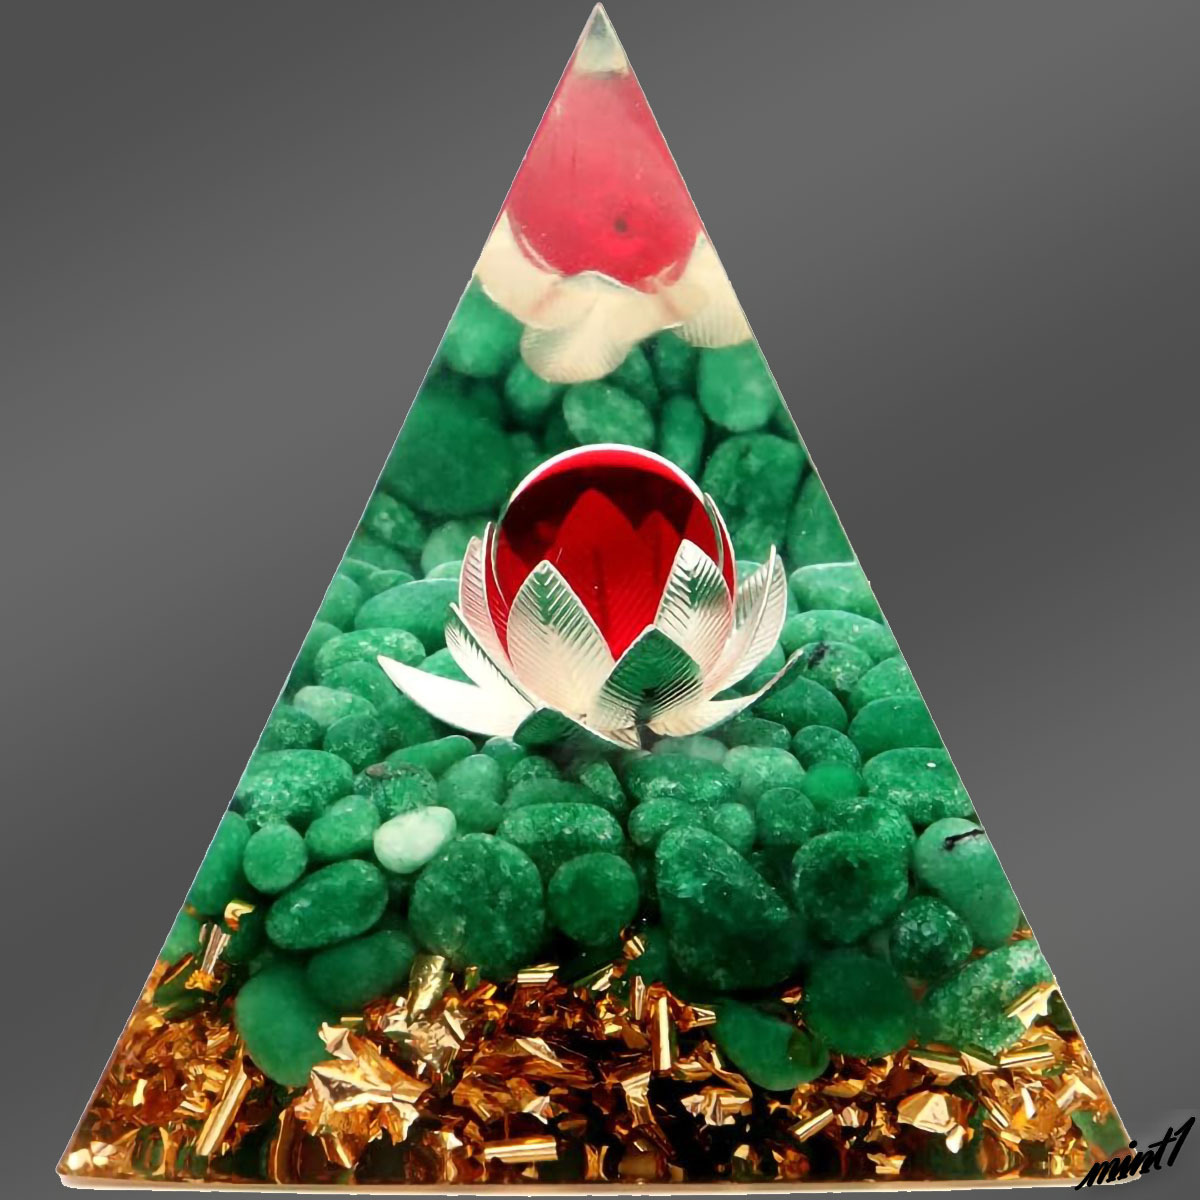 【浄化と幸運のアイテム】 オルゴナイトピラミッド グリーン オブシディアン 蓮の花 神秘的 オルゴンエネルギー インテリア オブジェ_画像2